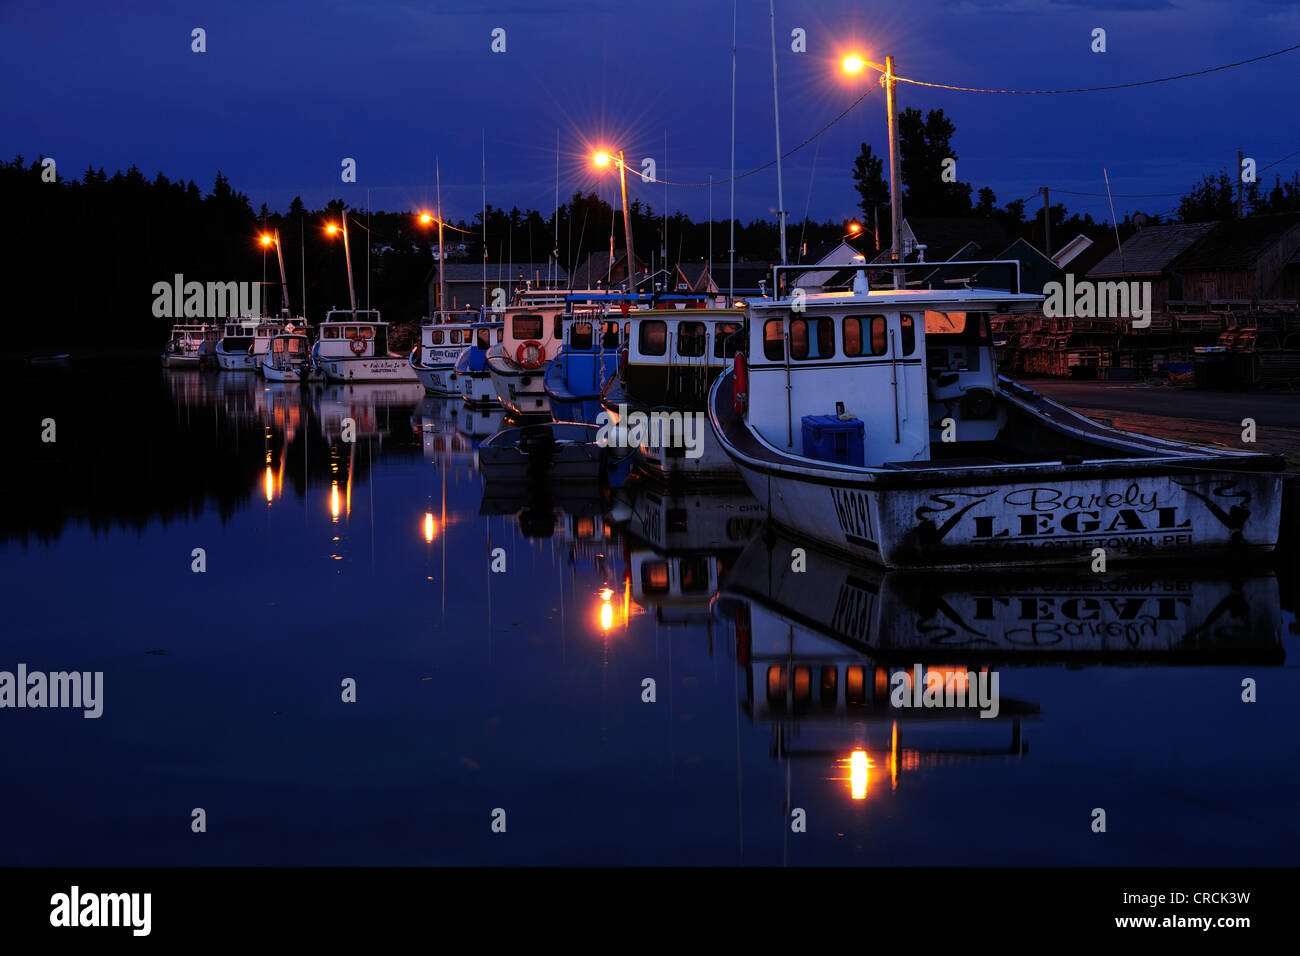 Photo de nuit, les bateaux dans le port de North Rustico, Prince Edward Island, Canada, Amérique du Nord Banque D'Images